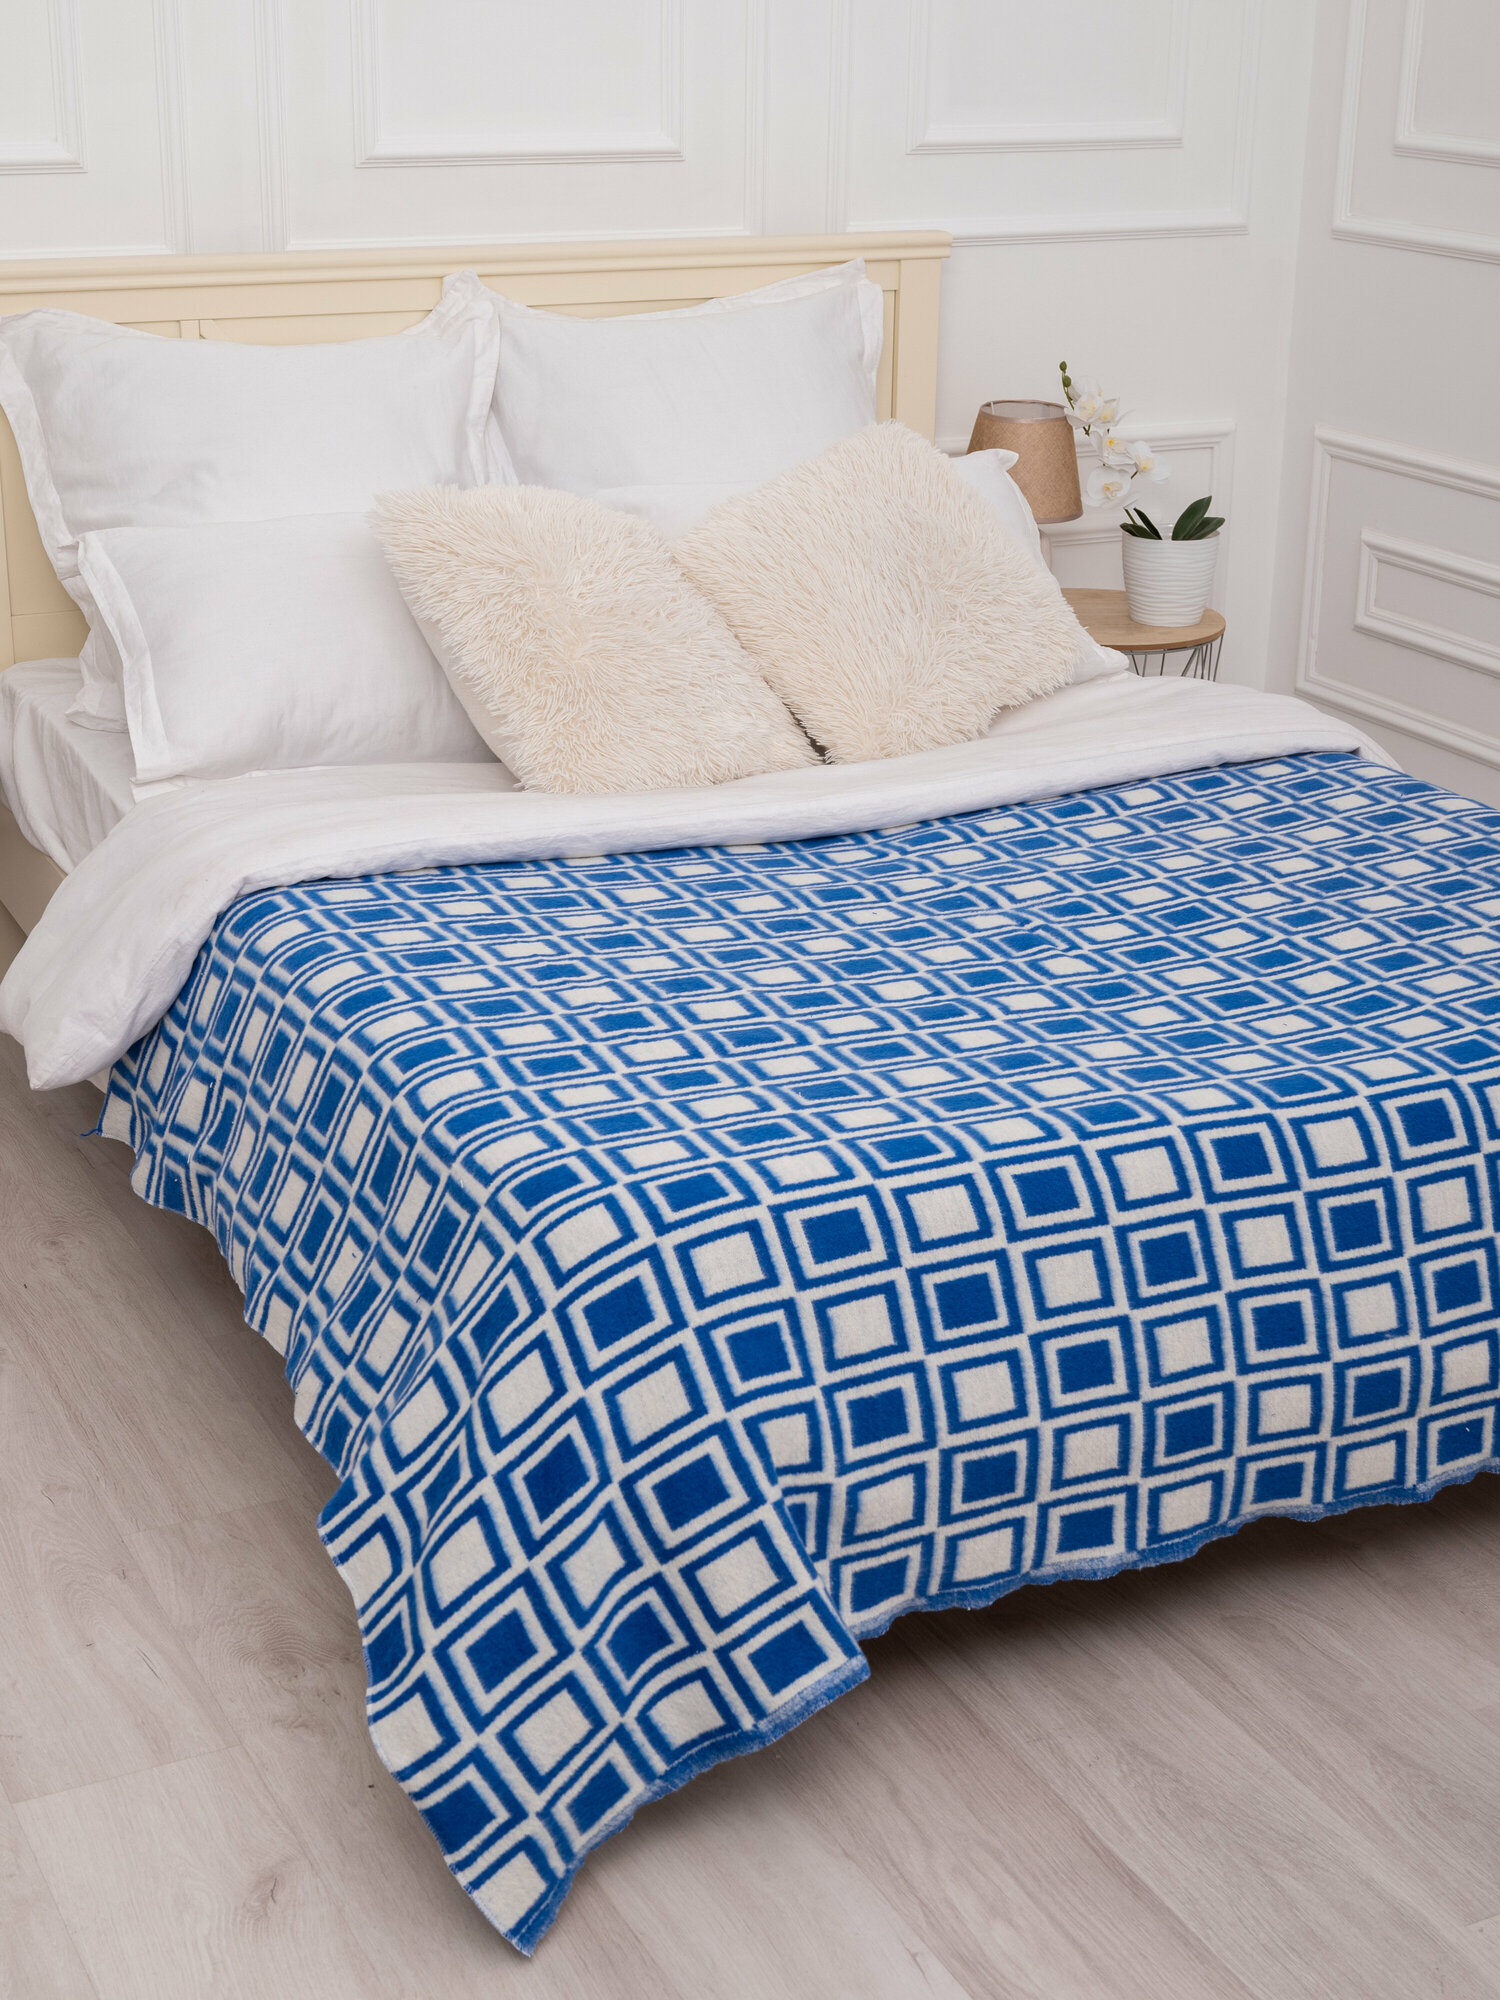 Одеяло байковое 1,5 спальное (140*200см), синее, клетка